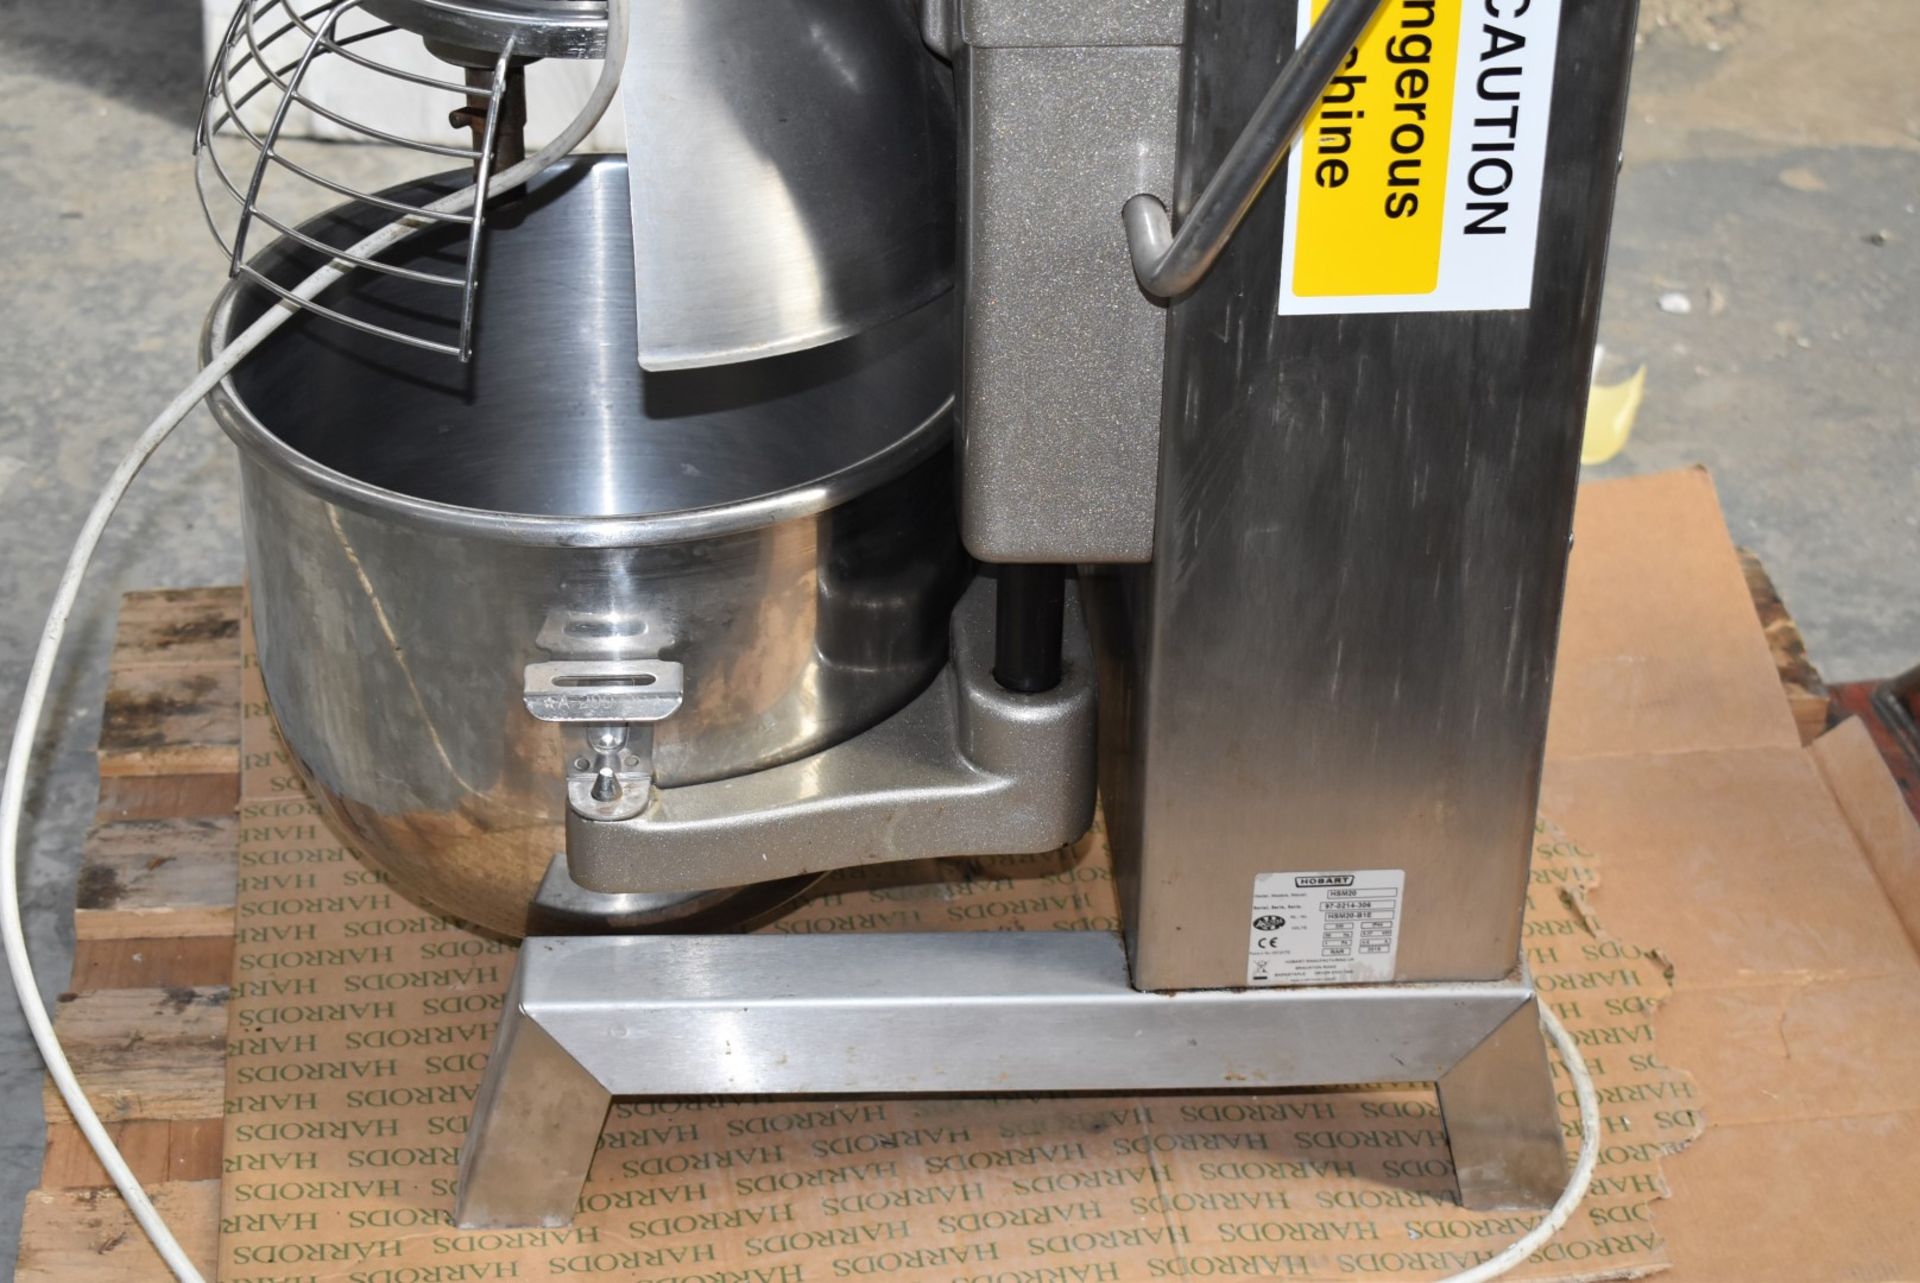 1 x Hobart HSM20 20 Litre Dough Mixer - Image 8 of 8